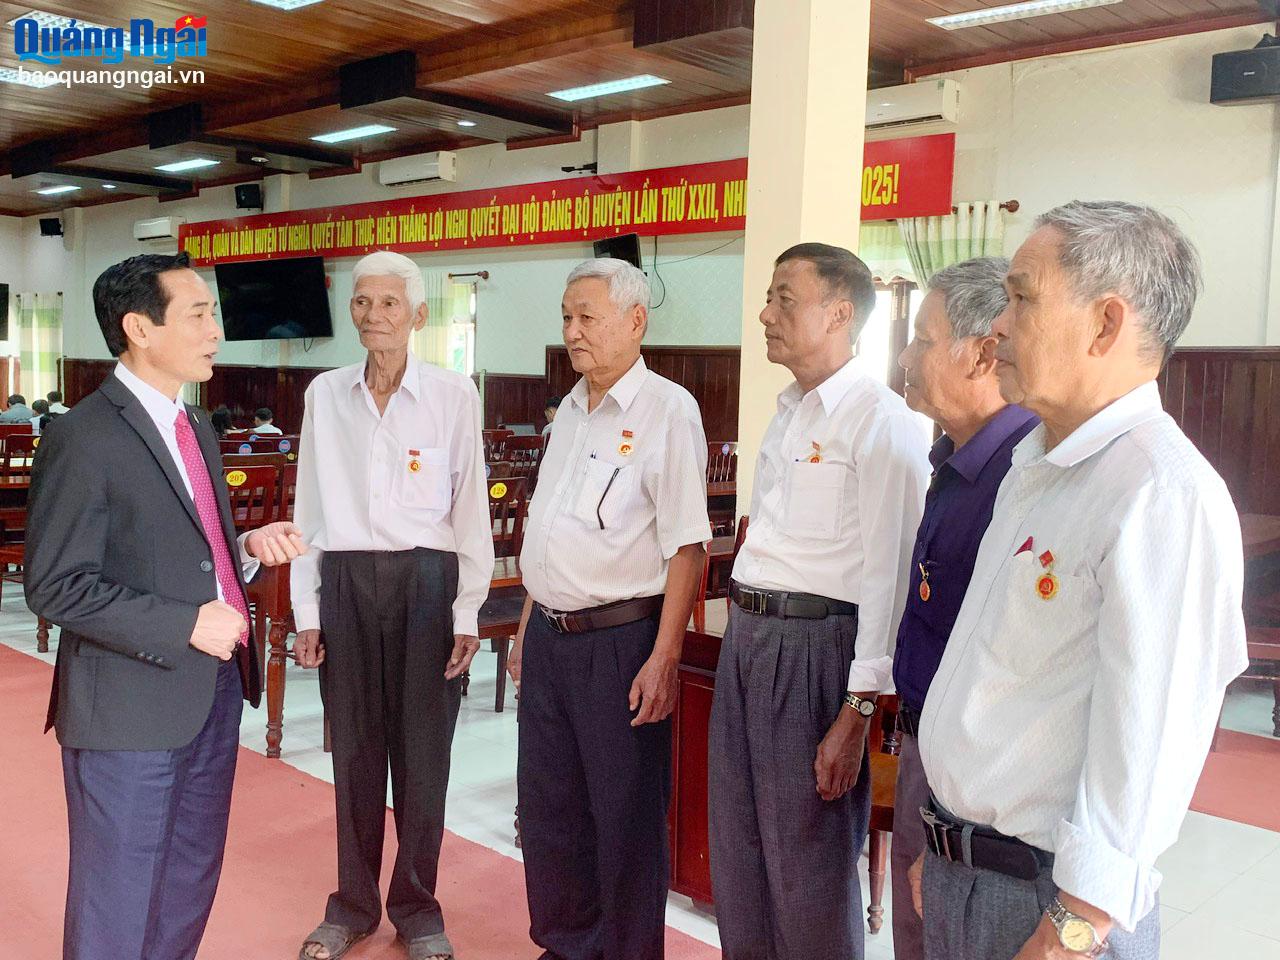 Bí thư Huyện ủy Tư Nghĩa Trần Quang Tòa (bên trái) trao đổi với các đảng viên nhận Huy hiệu 40 năm tuổi Đảng.